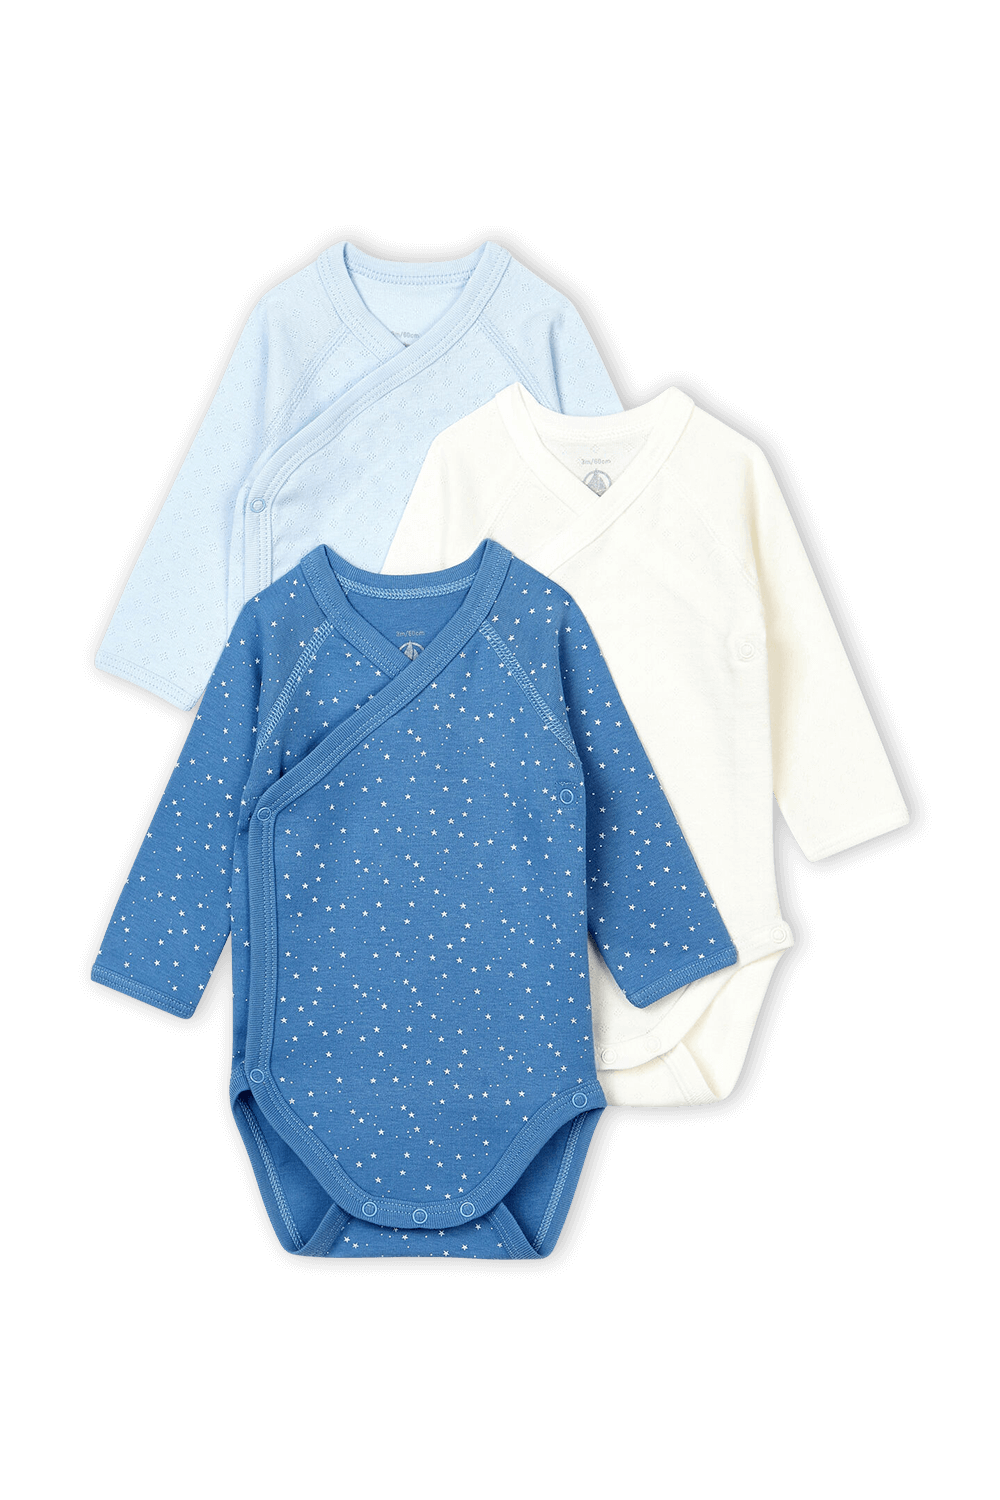 גילאי 1-12 חודשים מארז שלוש בגדי גוף בגווני כחול ולבן PETIT BATEAU